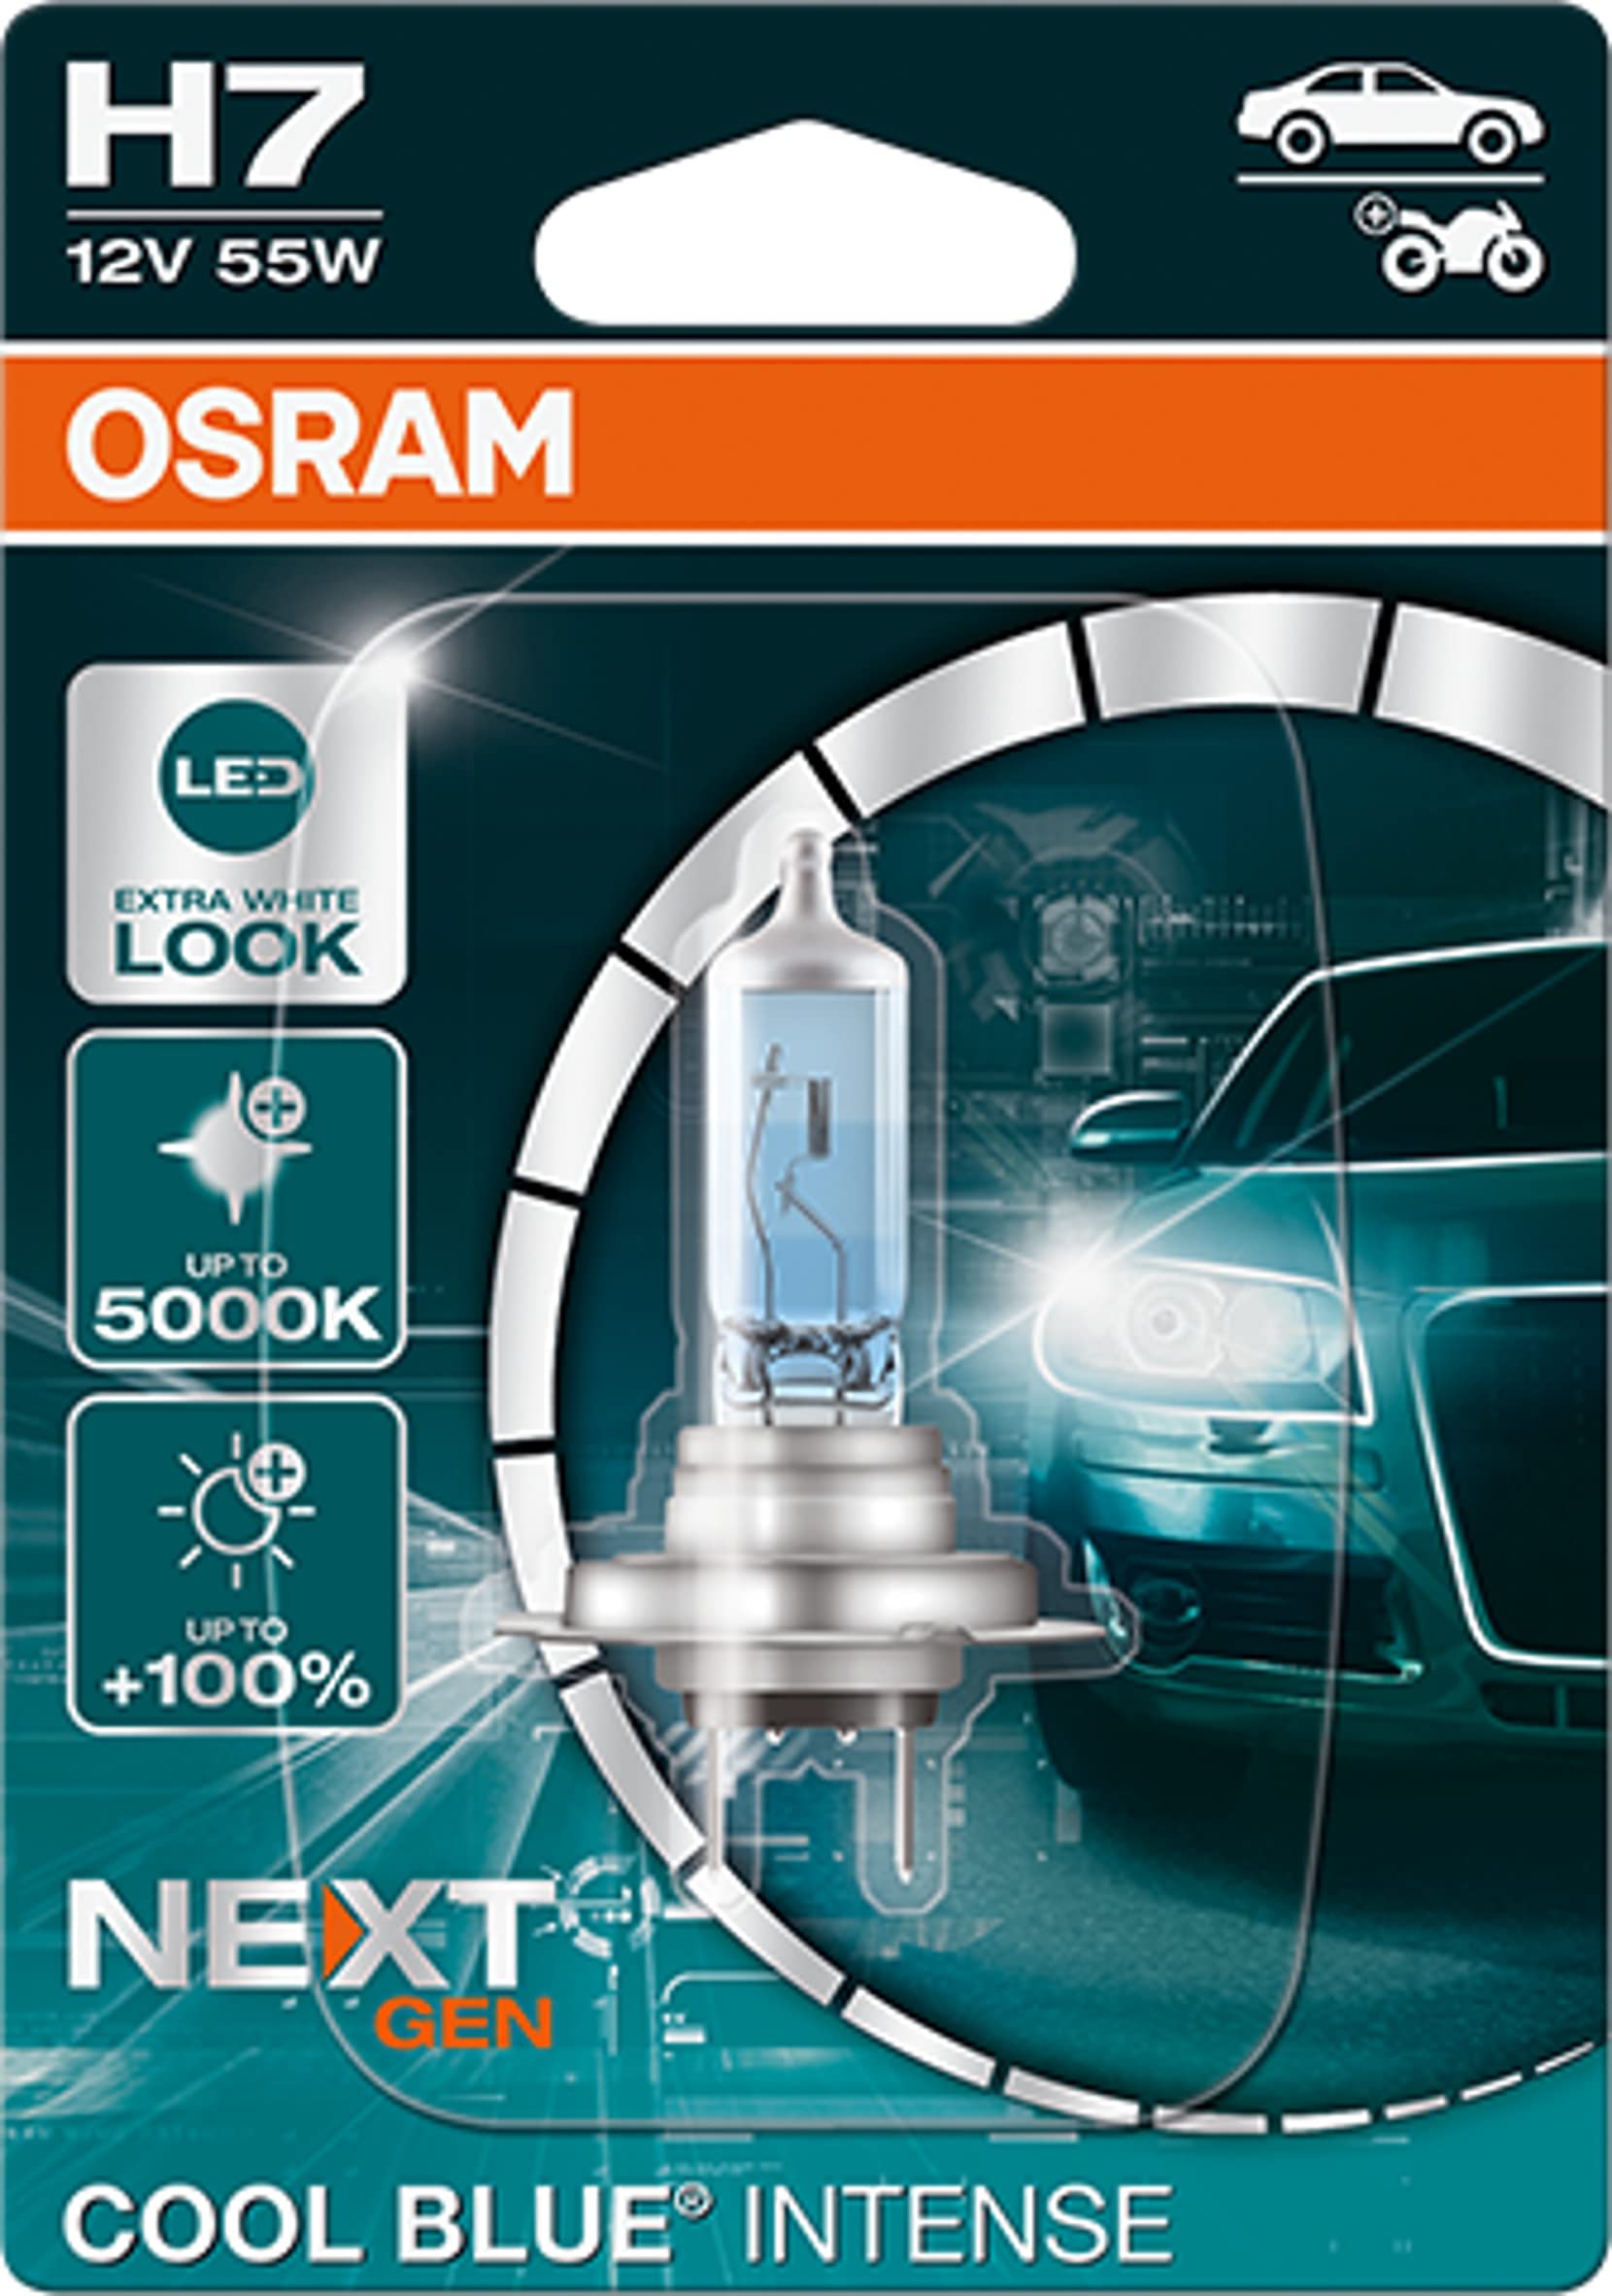 Osram COOL BLUE® INTENSE H7, 100% mehr Helligkeit, bis zu 5.000K, Halogen-Scheinwerferlampe, LED-Look, Einzelblister (1 Lampe) von Osram